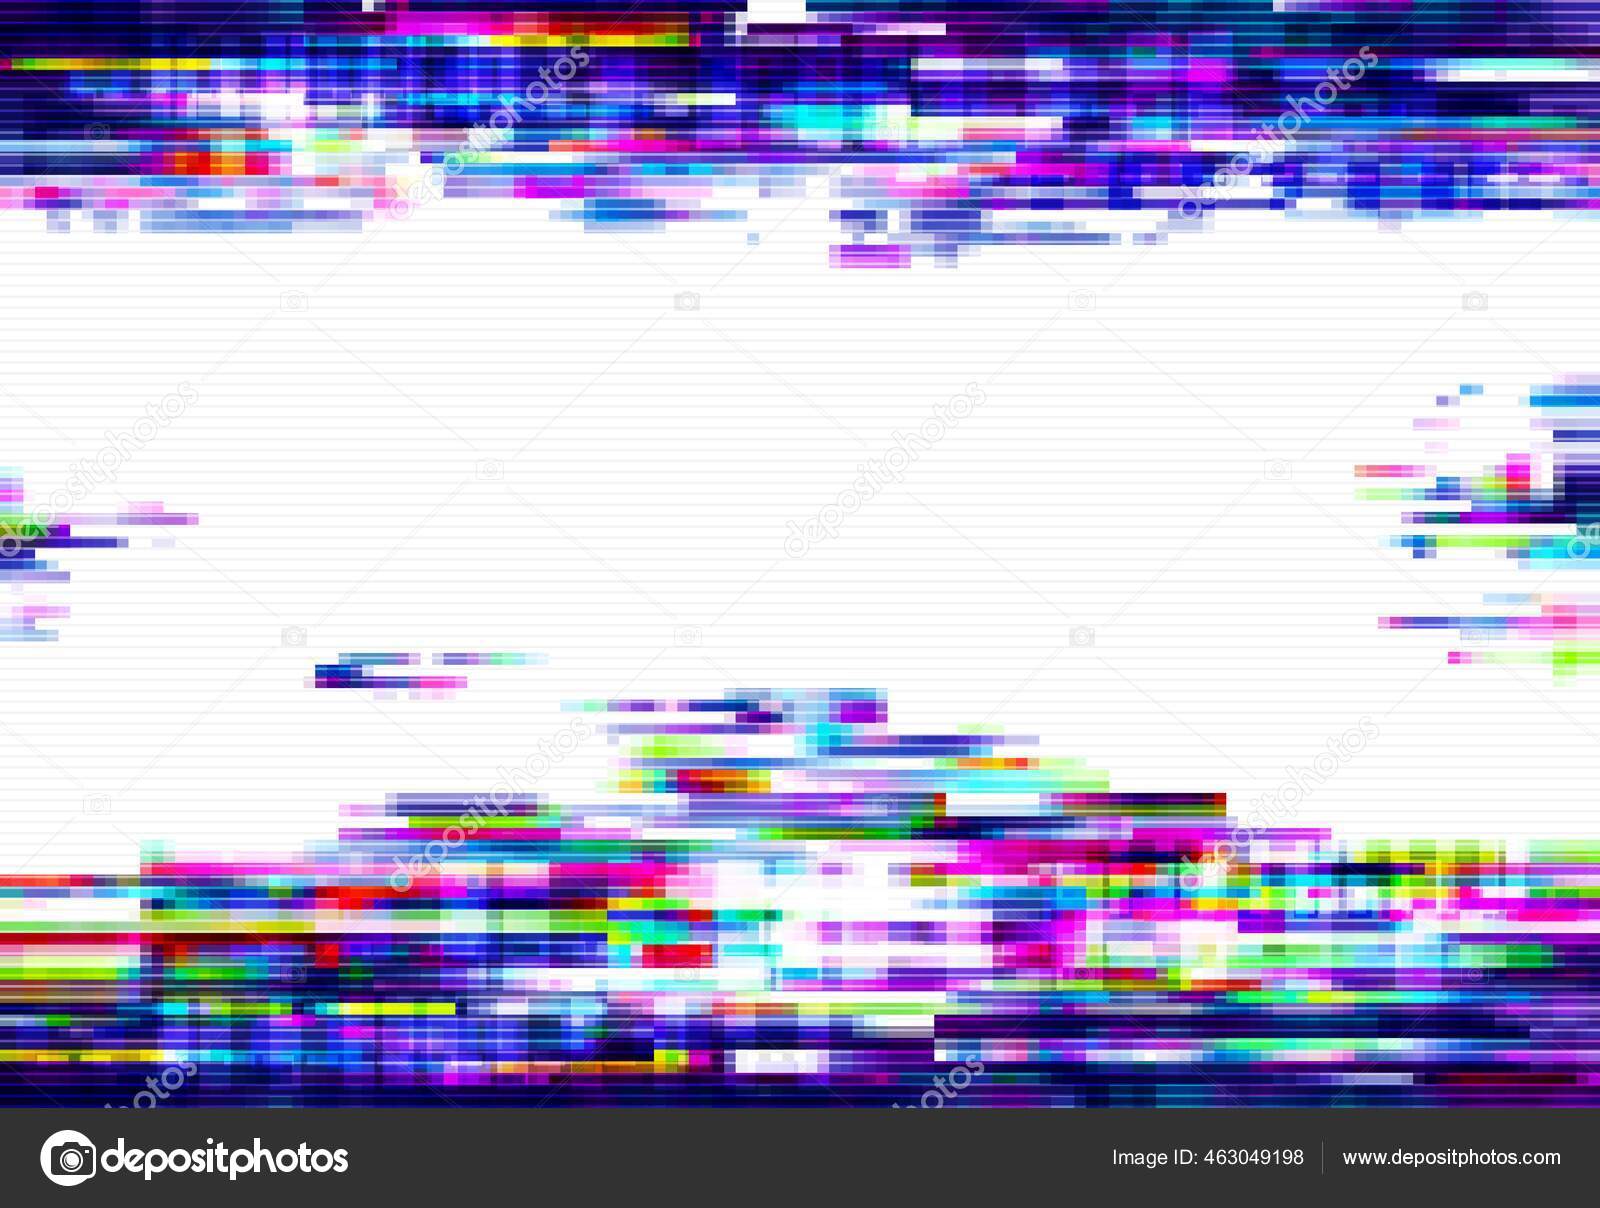 Psychedelic glitch background. Random digital error signal. Wave